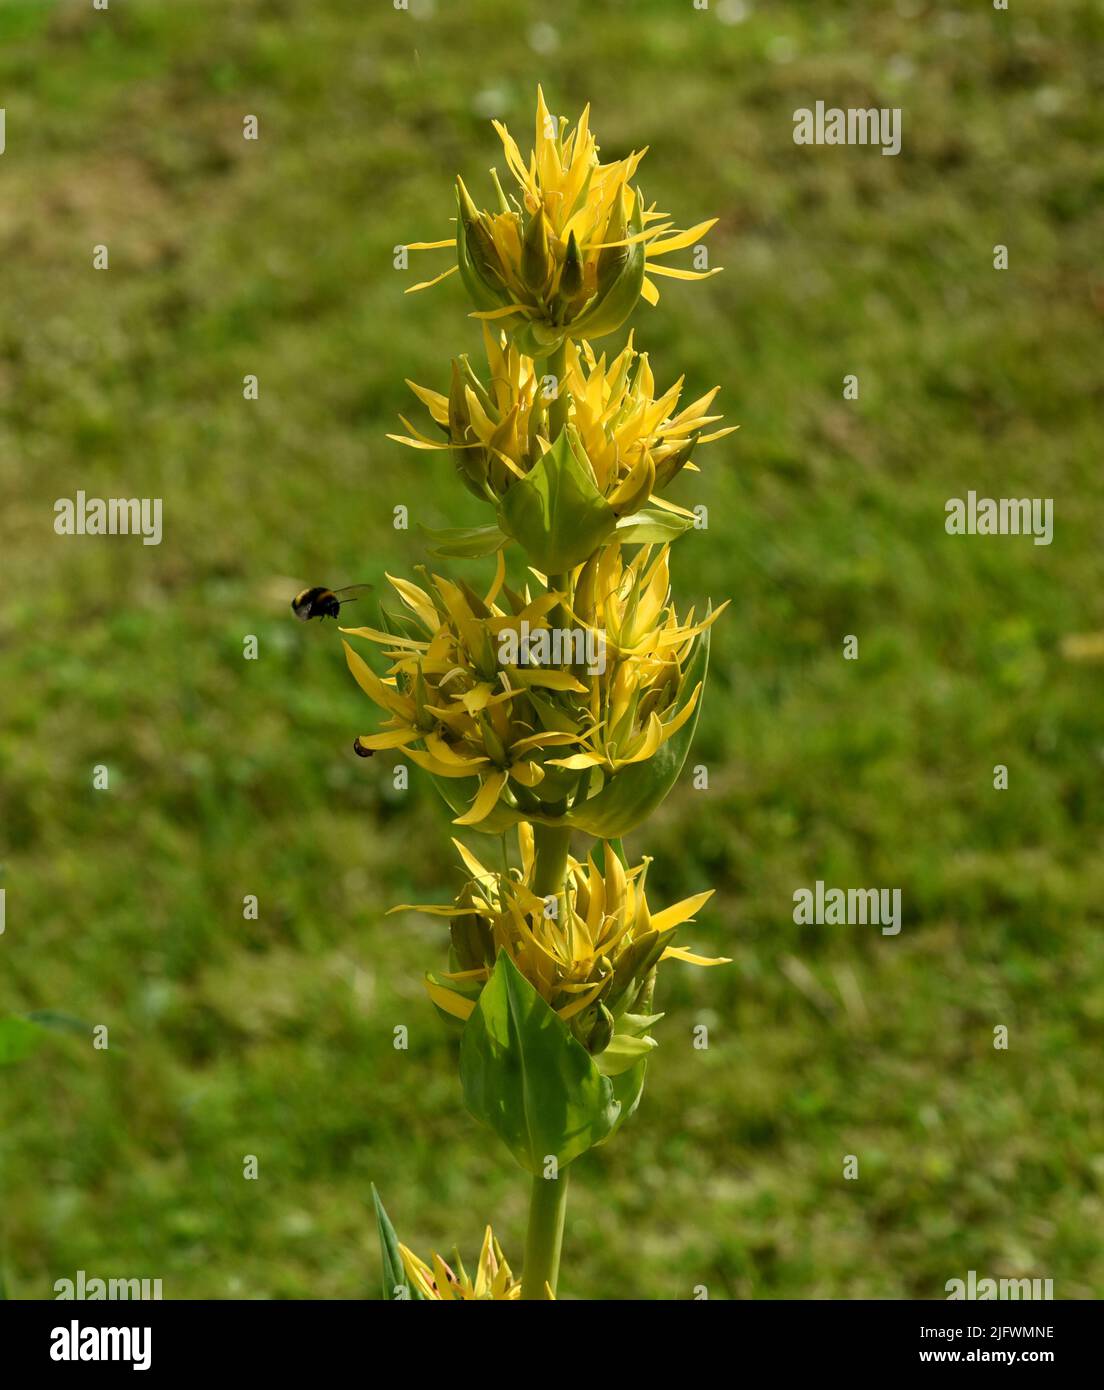 Gelber Enzian, Gentiana Lutea ist eine wichtige Heilpflanze und wird auch in der Medizin verwendet. Yellow Gentian, Gentiana Lutea is an important med Stock Photo